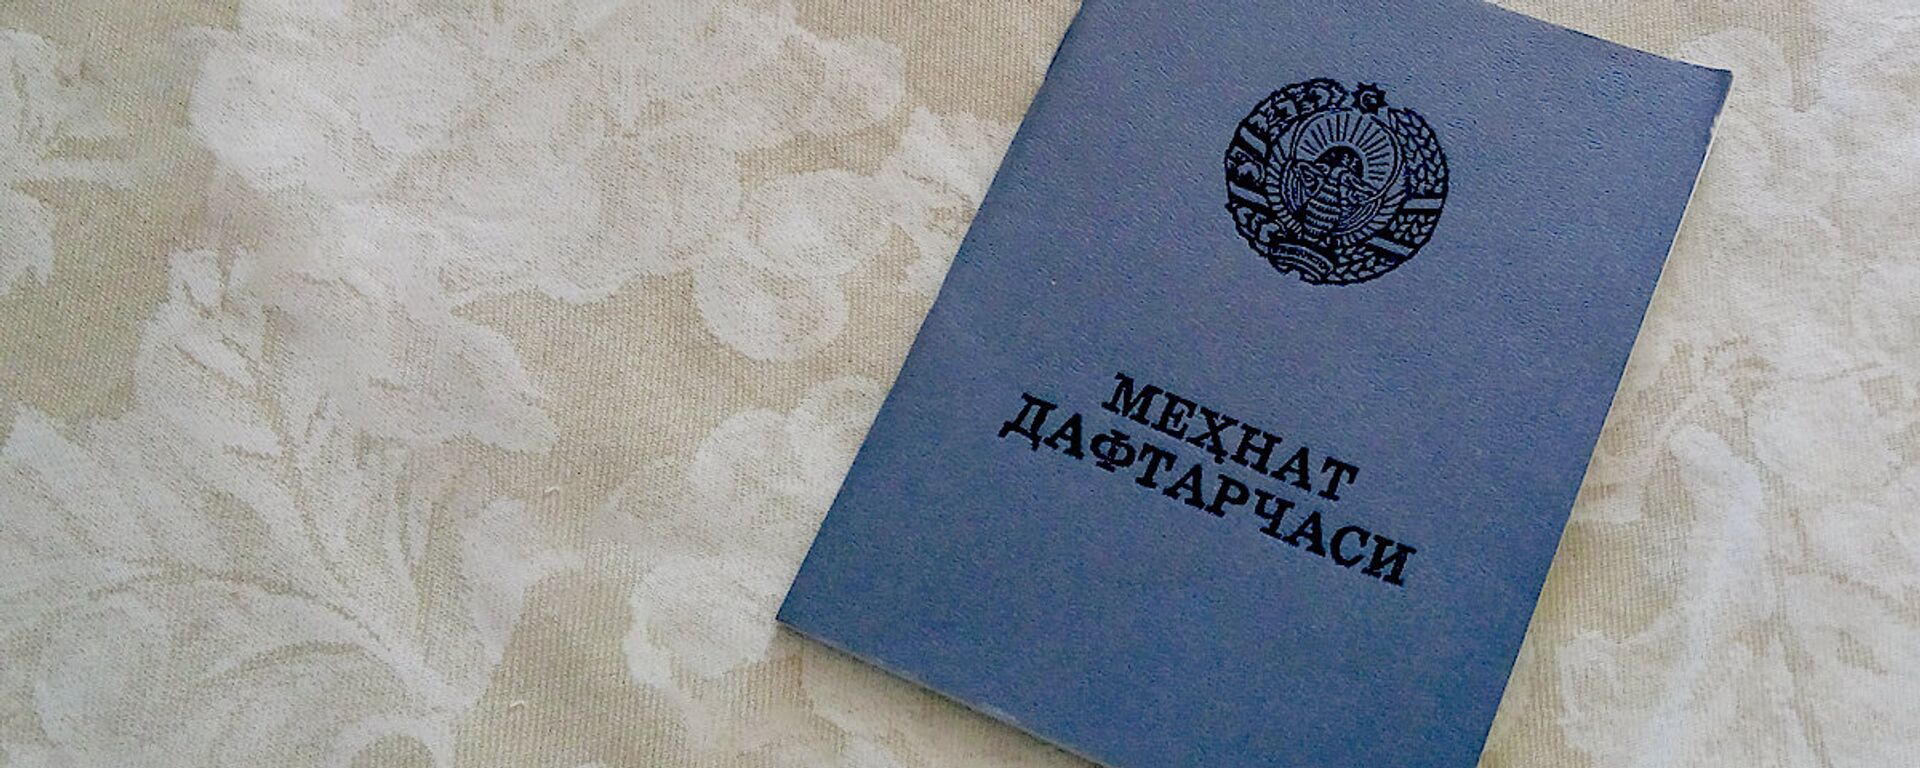 Трудовая книжка - Sputnik Узбекистан, 1920, 17.07.2018